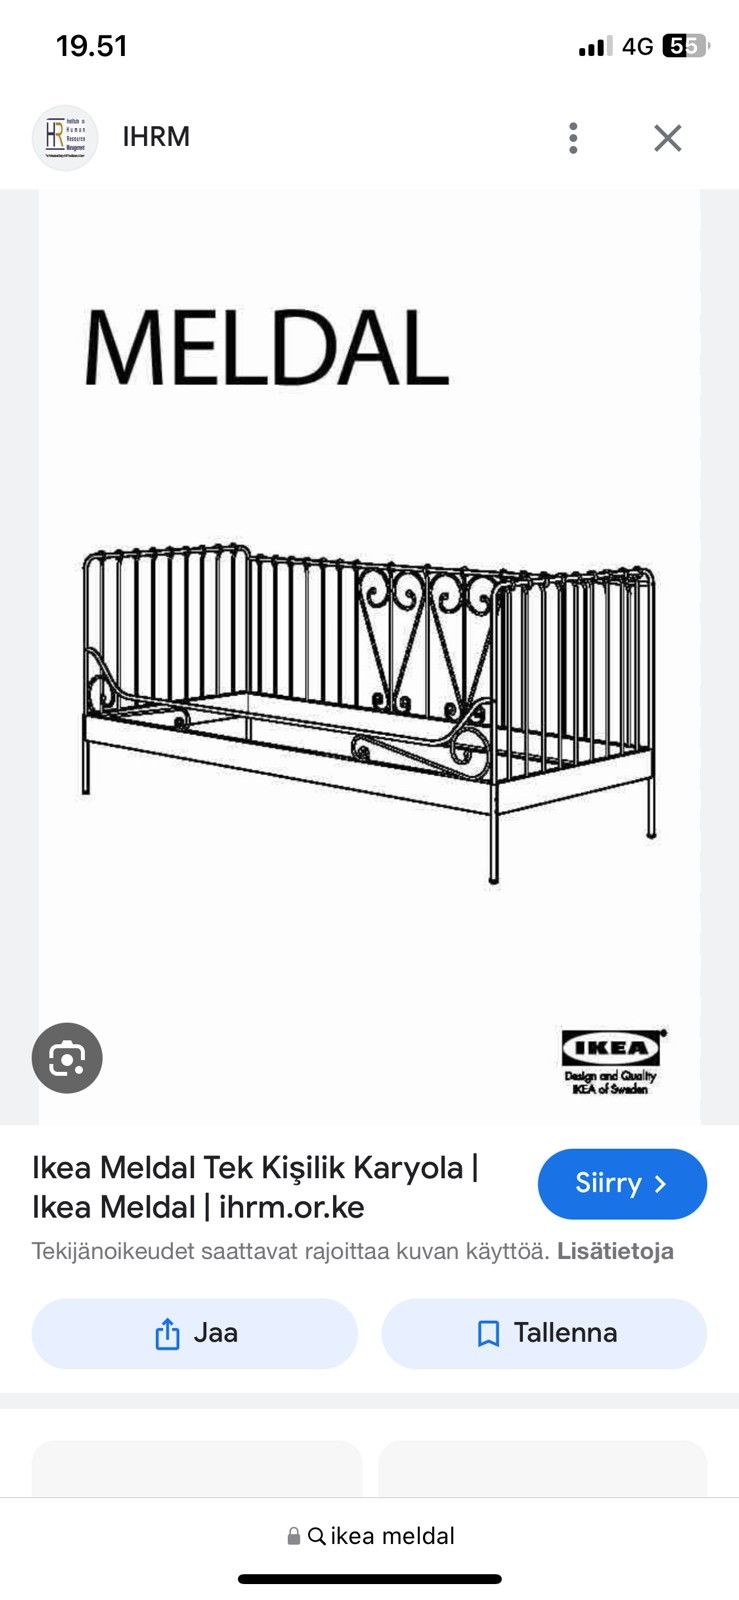 Ikea metallinen sohvasänky